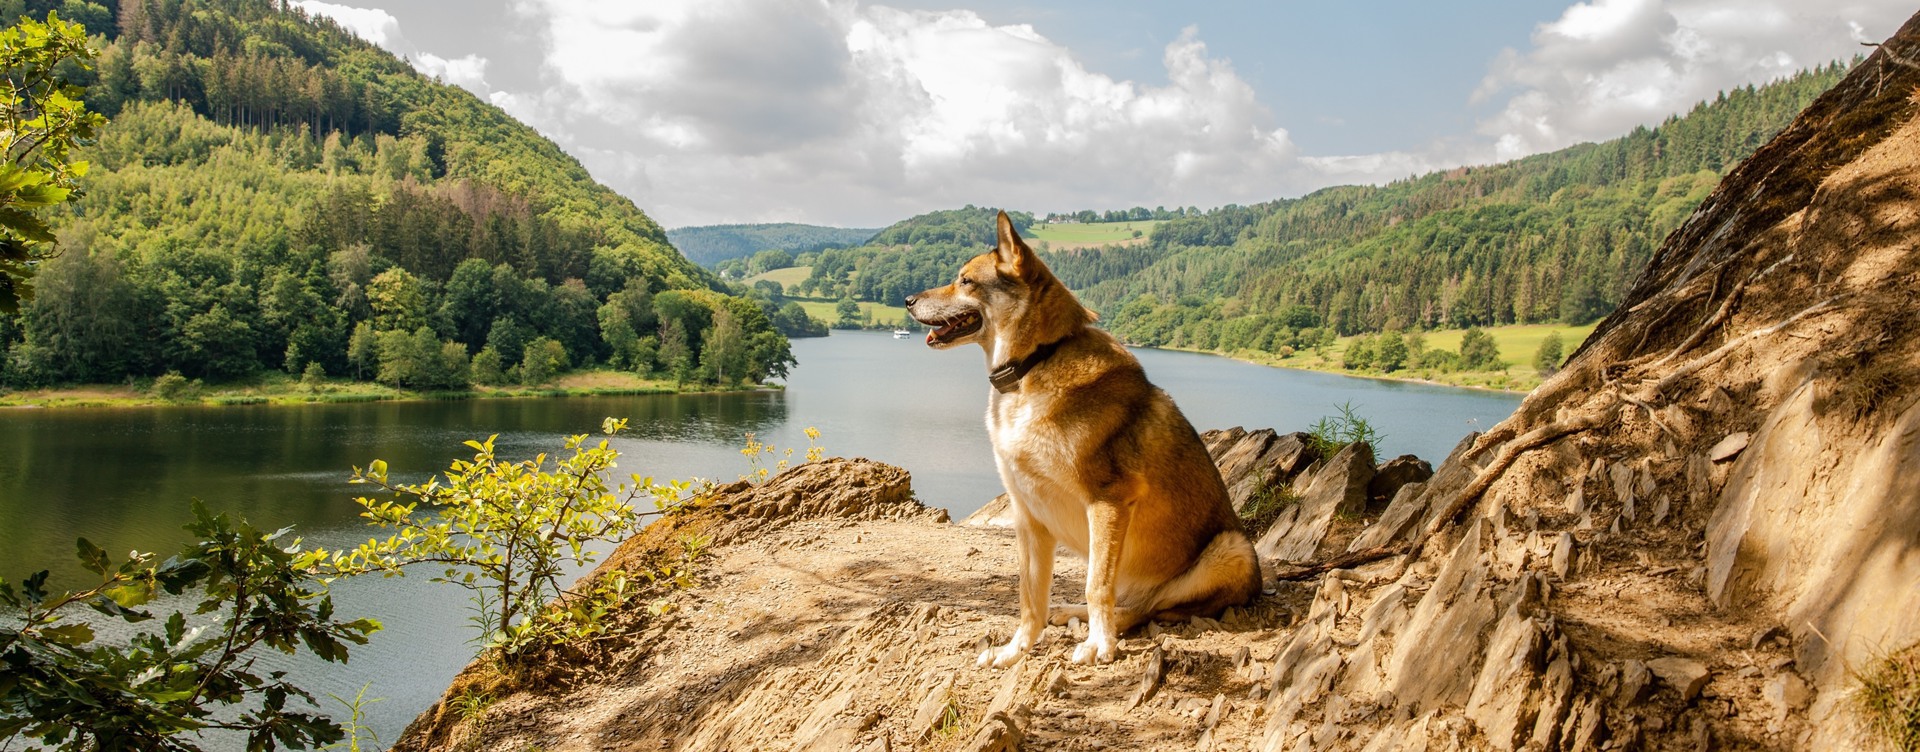 Genießen Sie Ihren Urlaub in den Ferienwohnungen des Eifeler Tor gemeinsam mit Ihrem Hund.